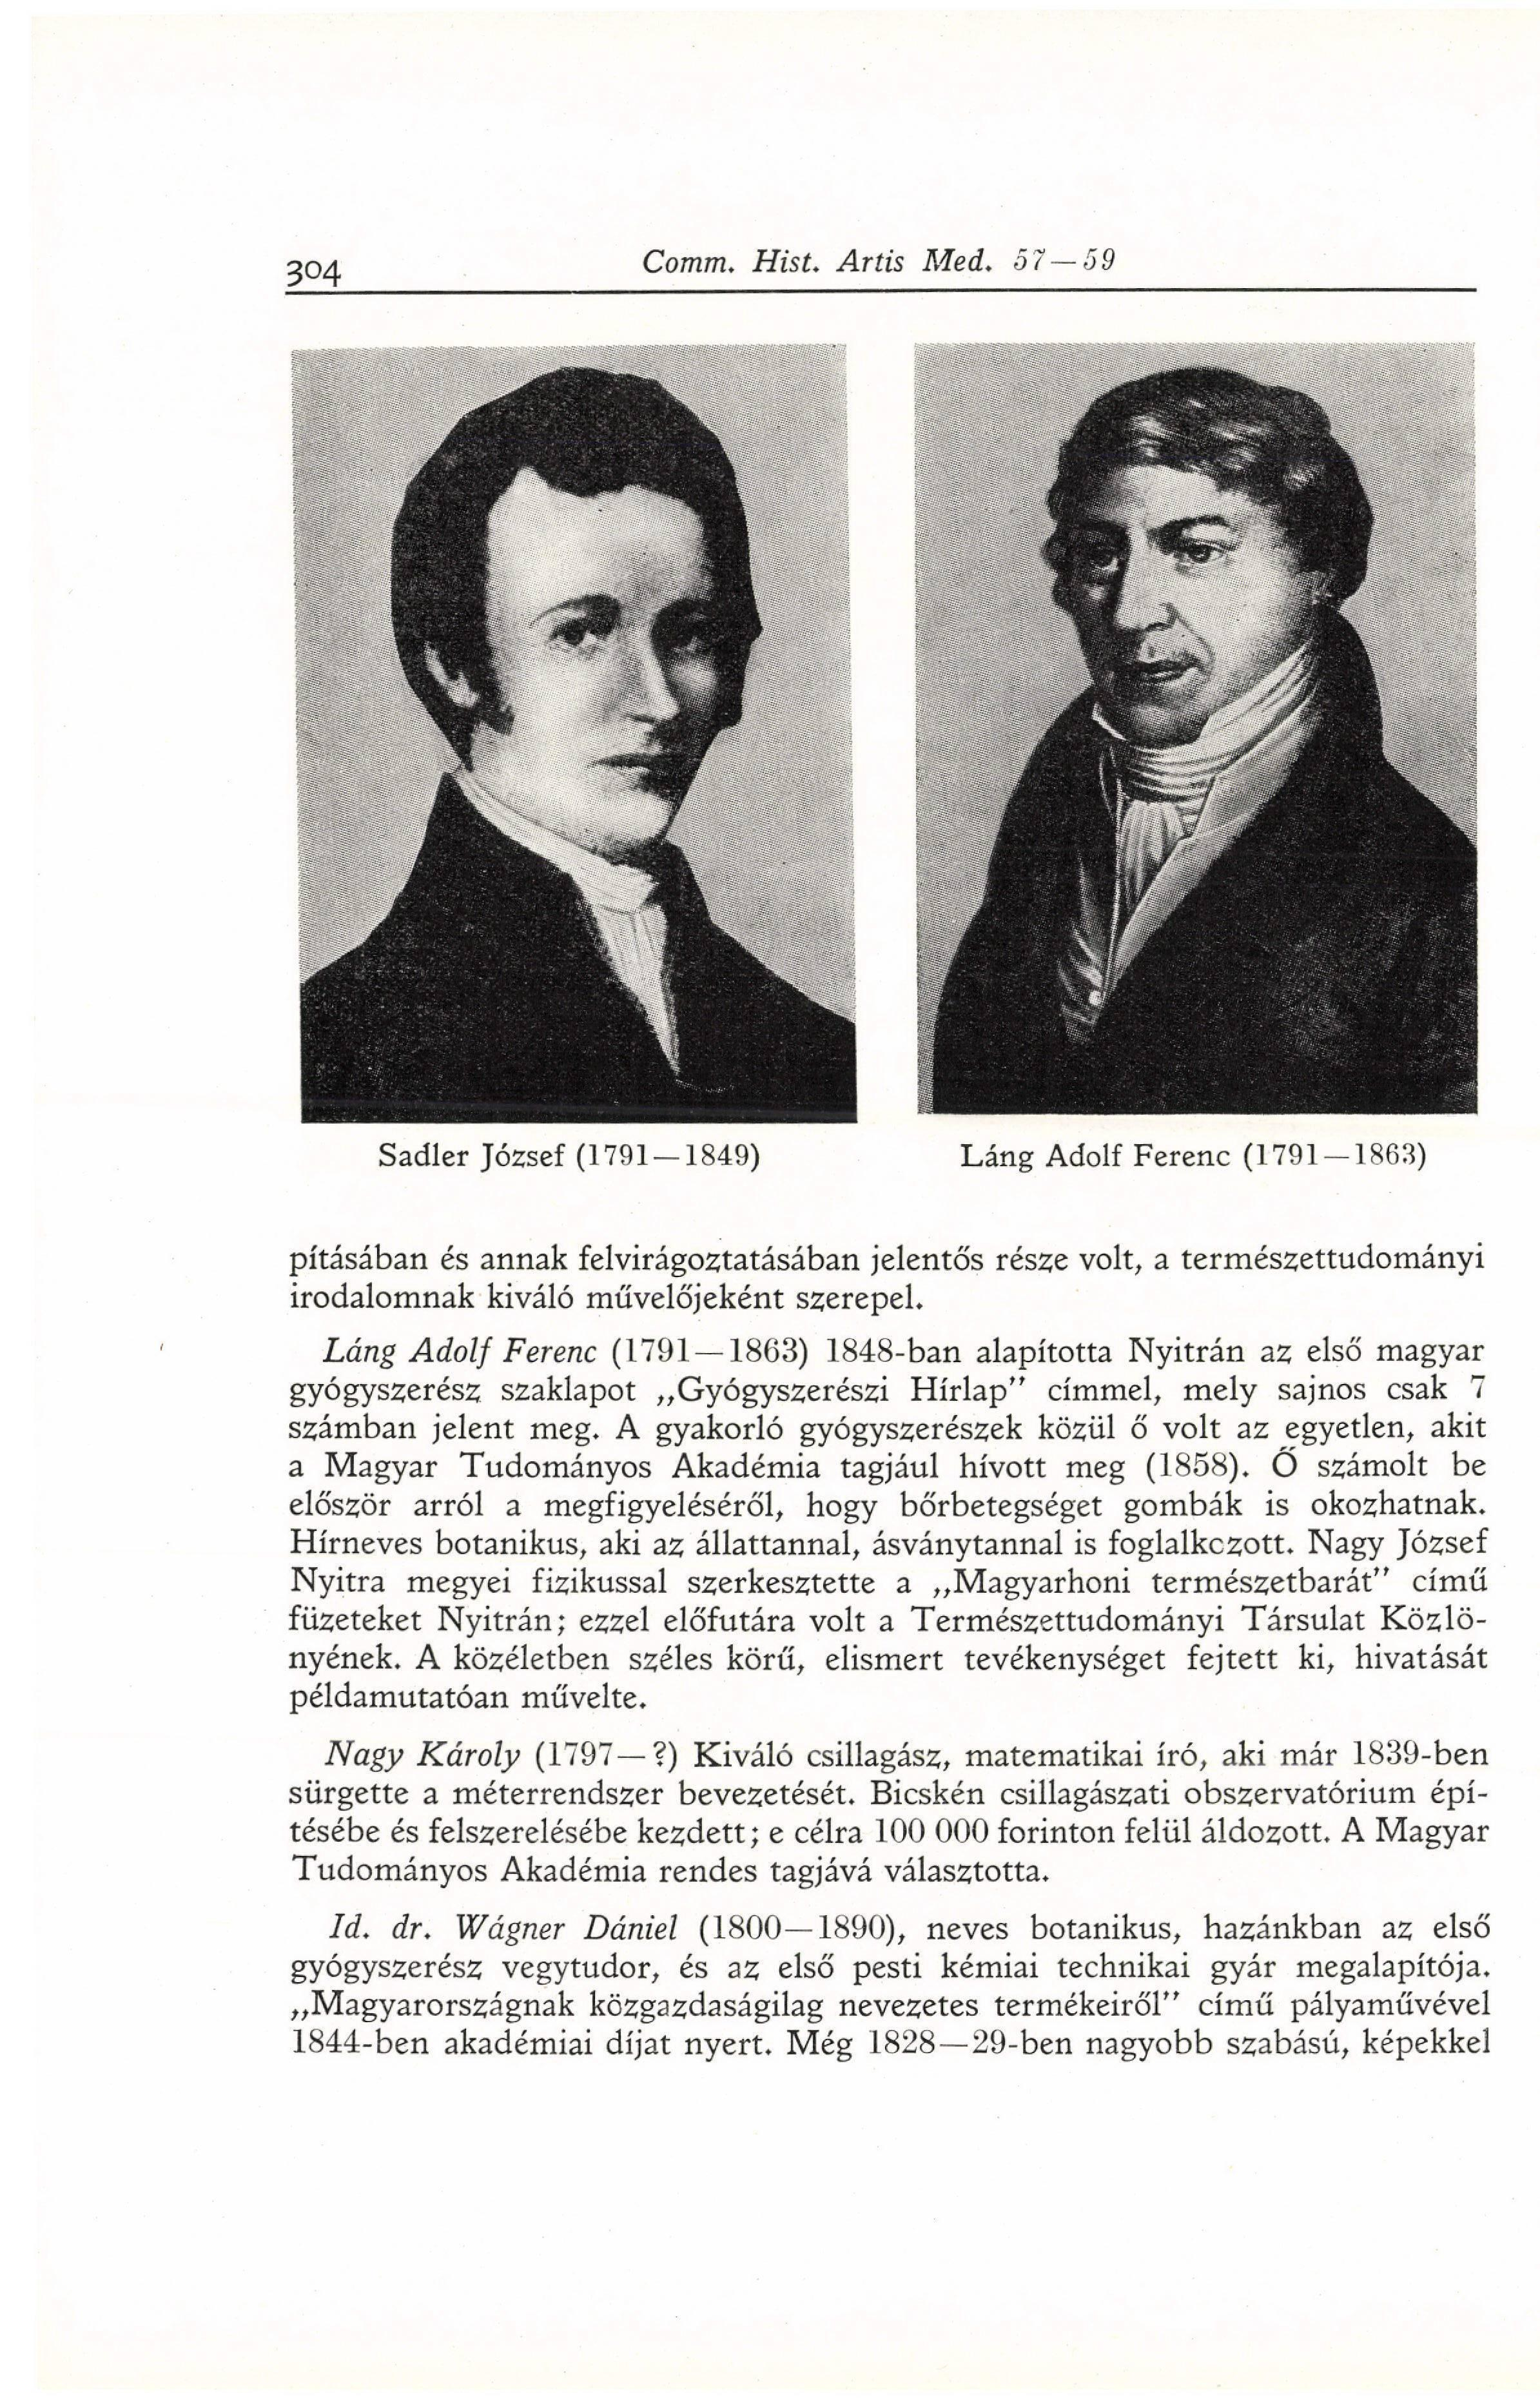 Sadler József (1791-1849) Láng Adolf Ferenc (1791-1863) pításában és annak felvirágoztatásában jelentős része volt, a természettudományi irodalomnak kiváló művelőjeként szerepel.